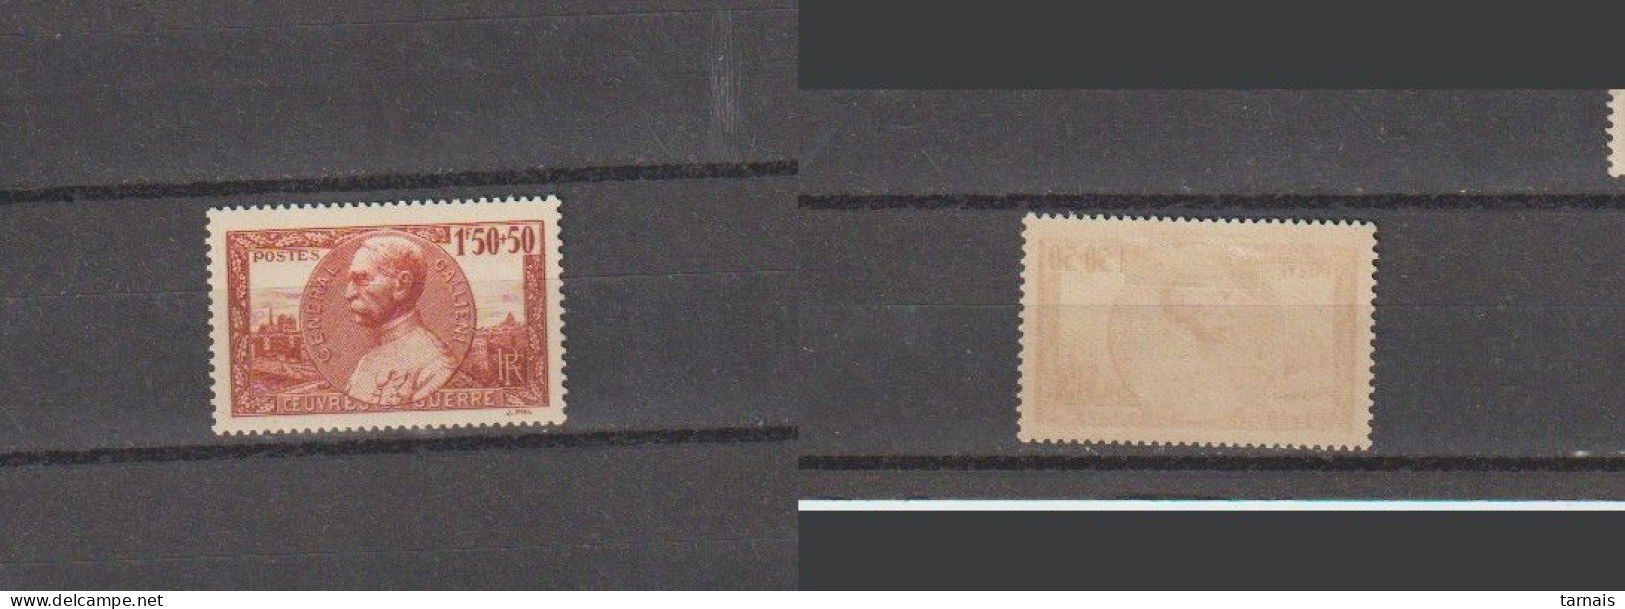 1940 N°456 Galliéni Neuf * (lot 361) - Ungebraucht